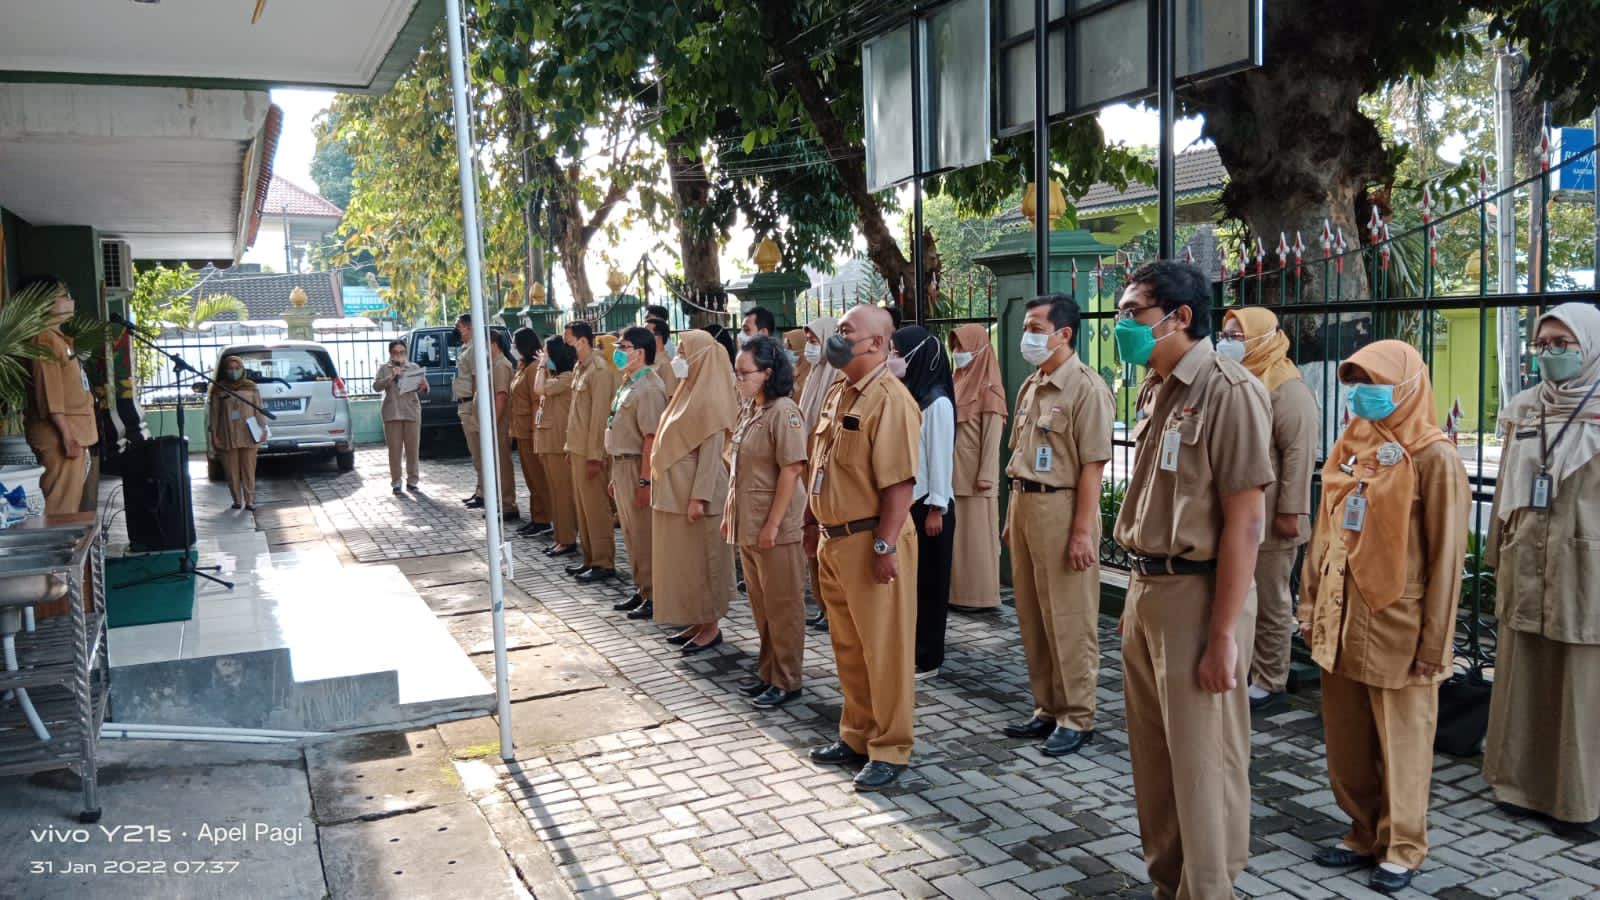 Pelaksanaan Apel Pagi di Lingkungan Pemerintah Kota Yogyakarta